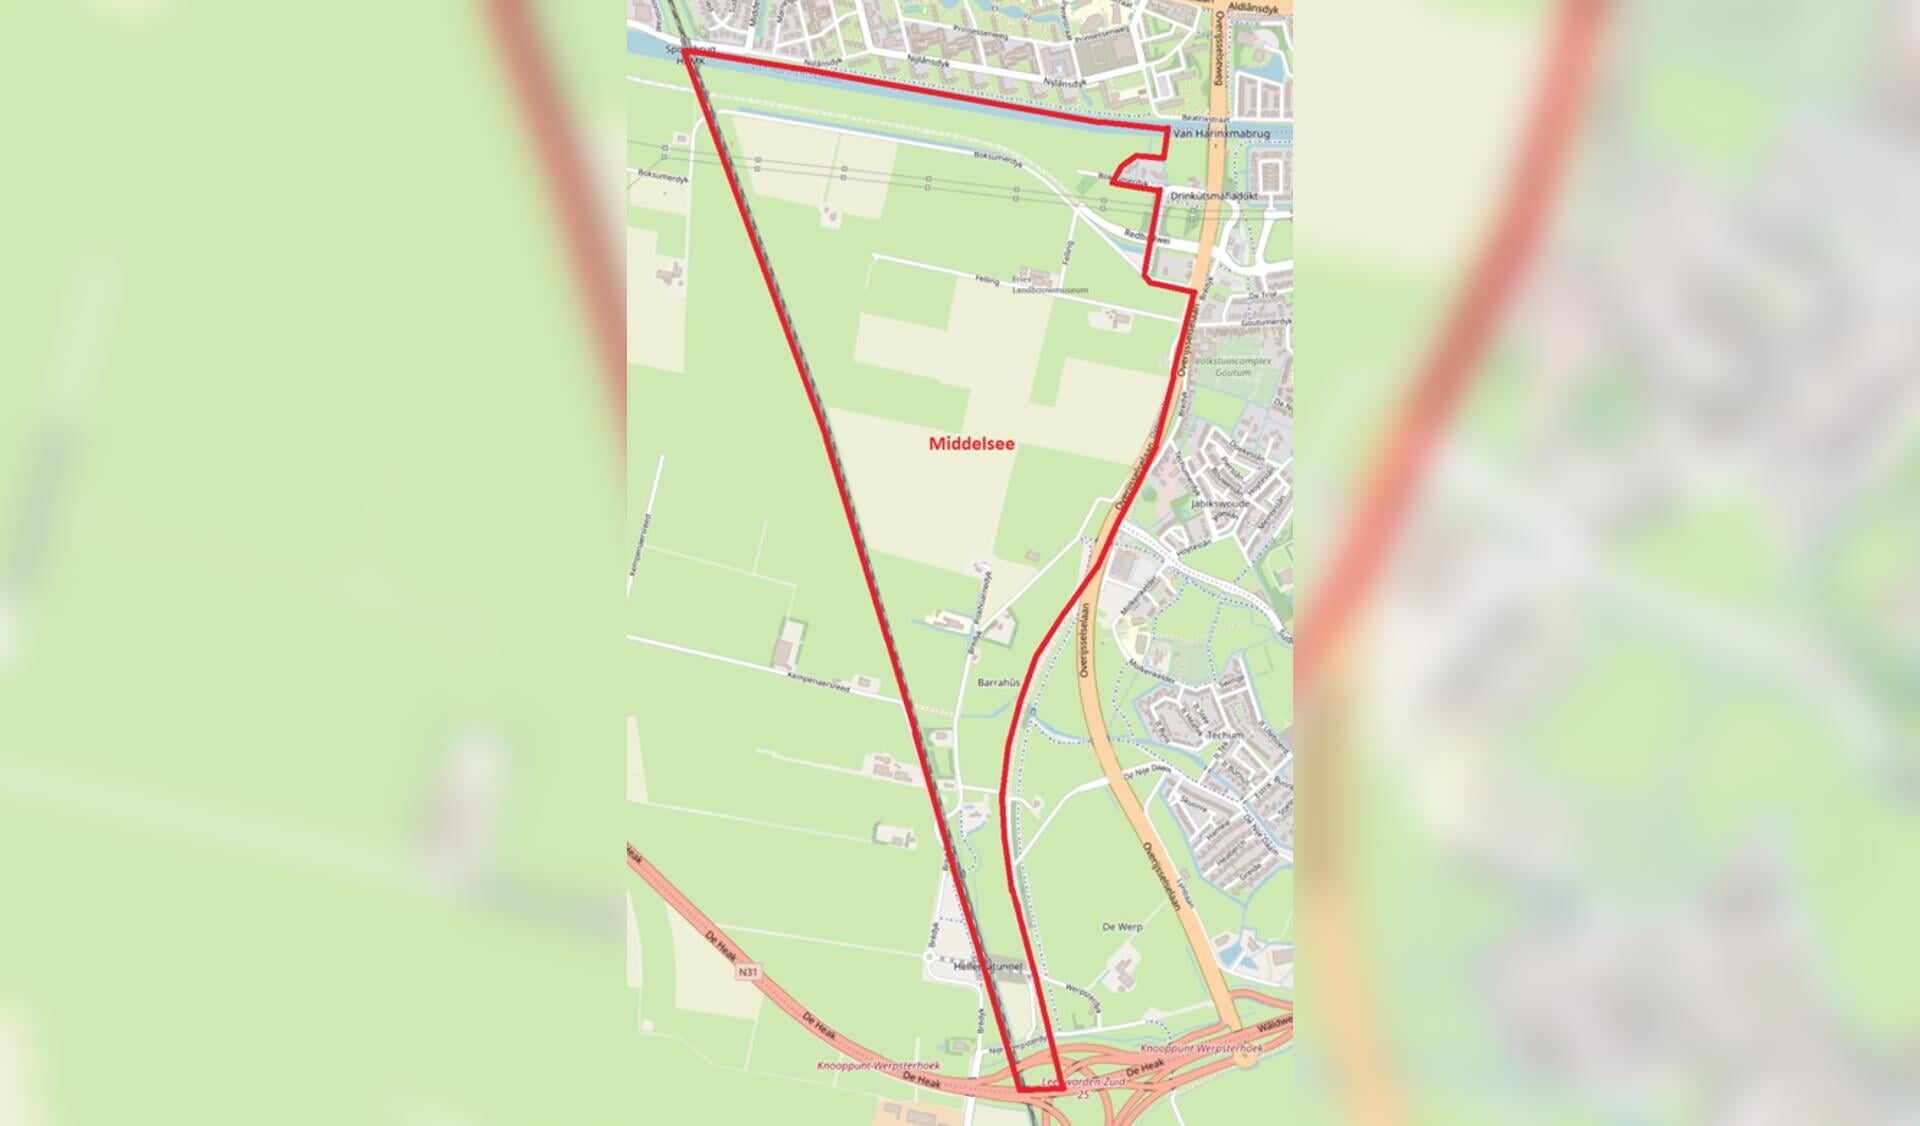 De contouren van de beoogde nieuwe woonwijk Middelsee ten zuiden van Leeuwarden. Rechts op de kaart ligt Goutum.